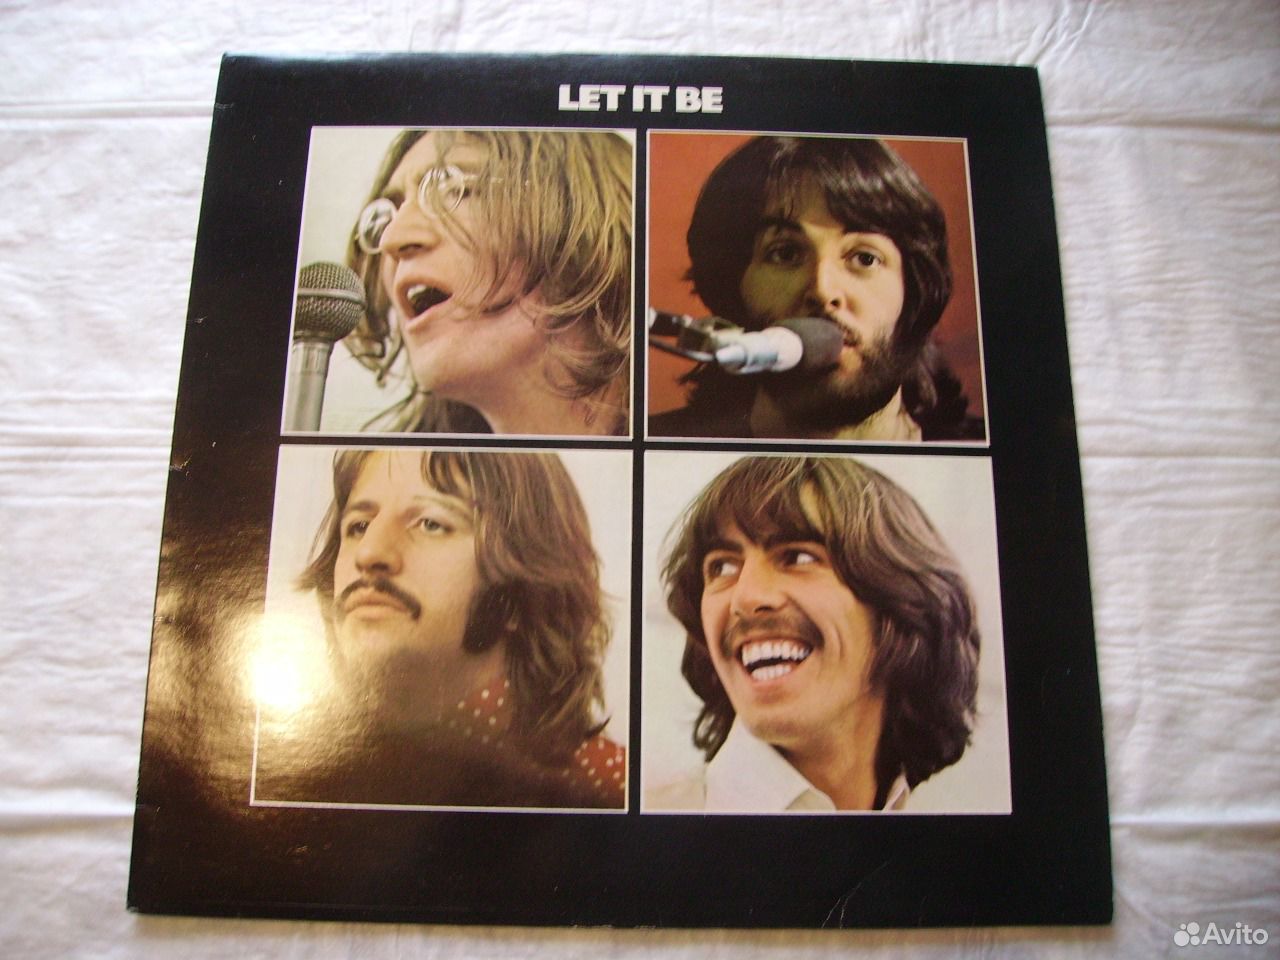 Лет ит би слушать. The Beatles Let it be пластинка. Пластинка Битлз Let it be 1969. Лет ИТ би. Обложки Битлз лет ИТ би.